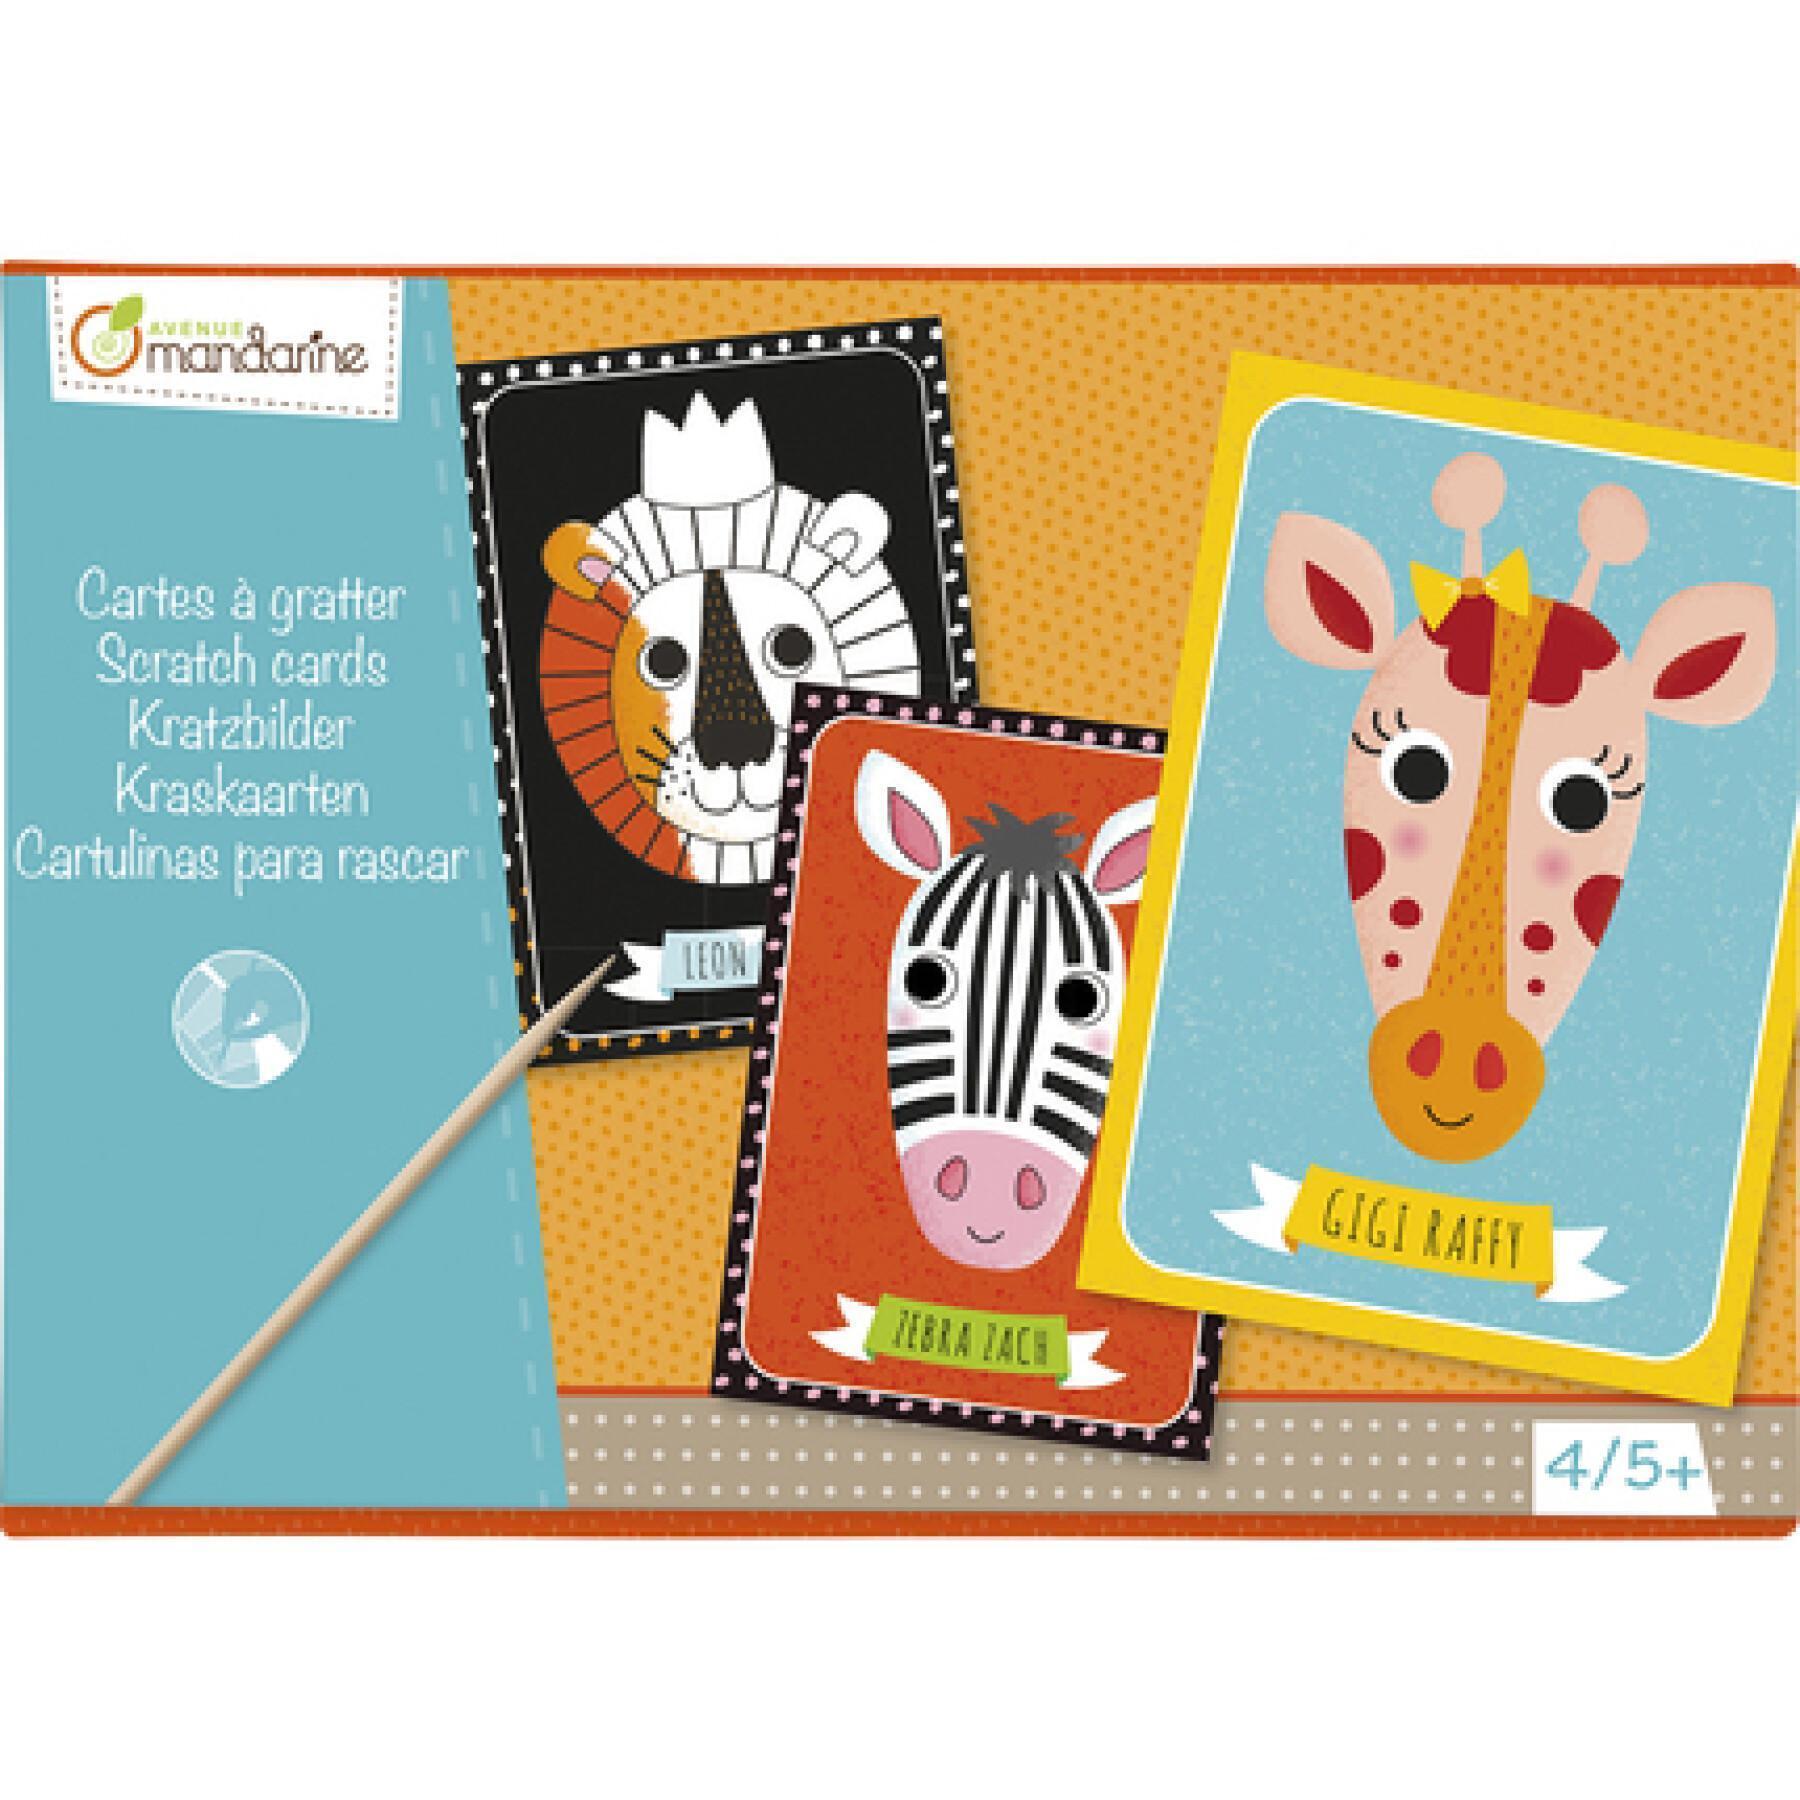 Creative box of scratch cards Avenue Mandarine